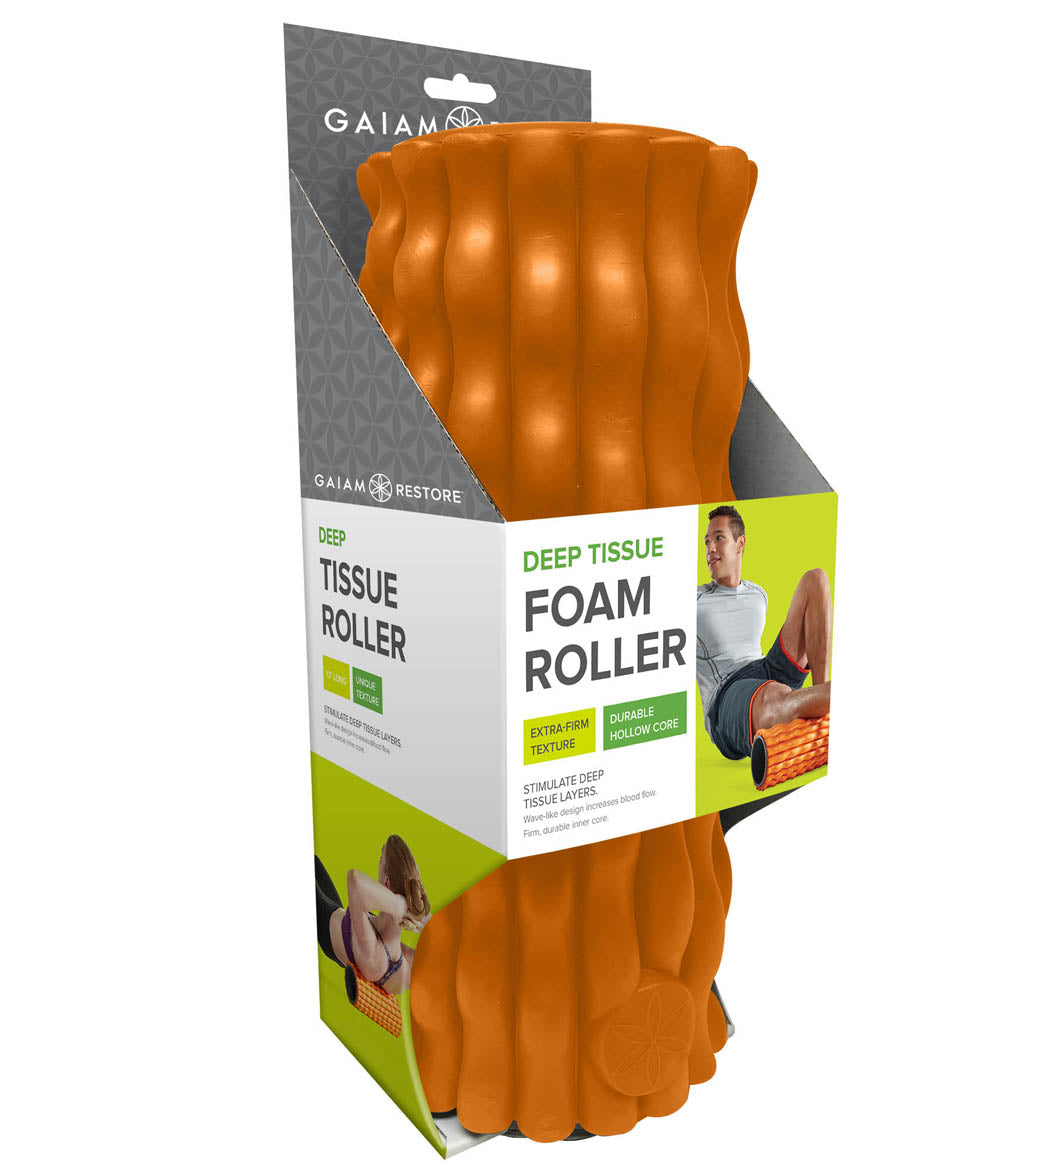 Gaiam Restore Deep Tissue Foam Roller (13 x 6 Diameter) at